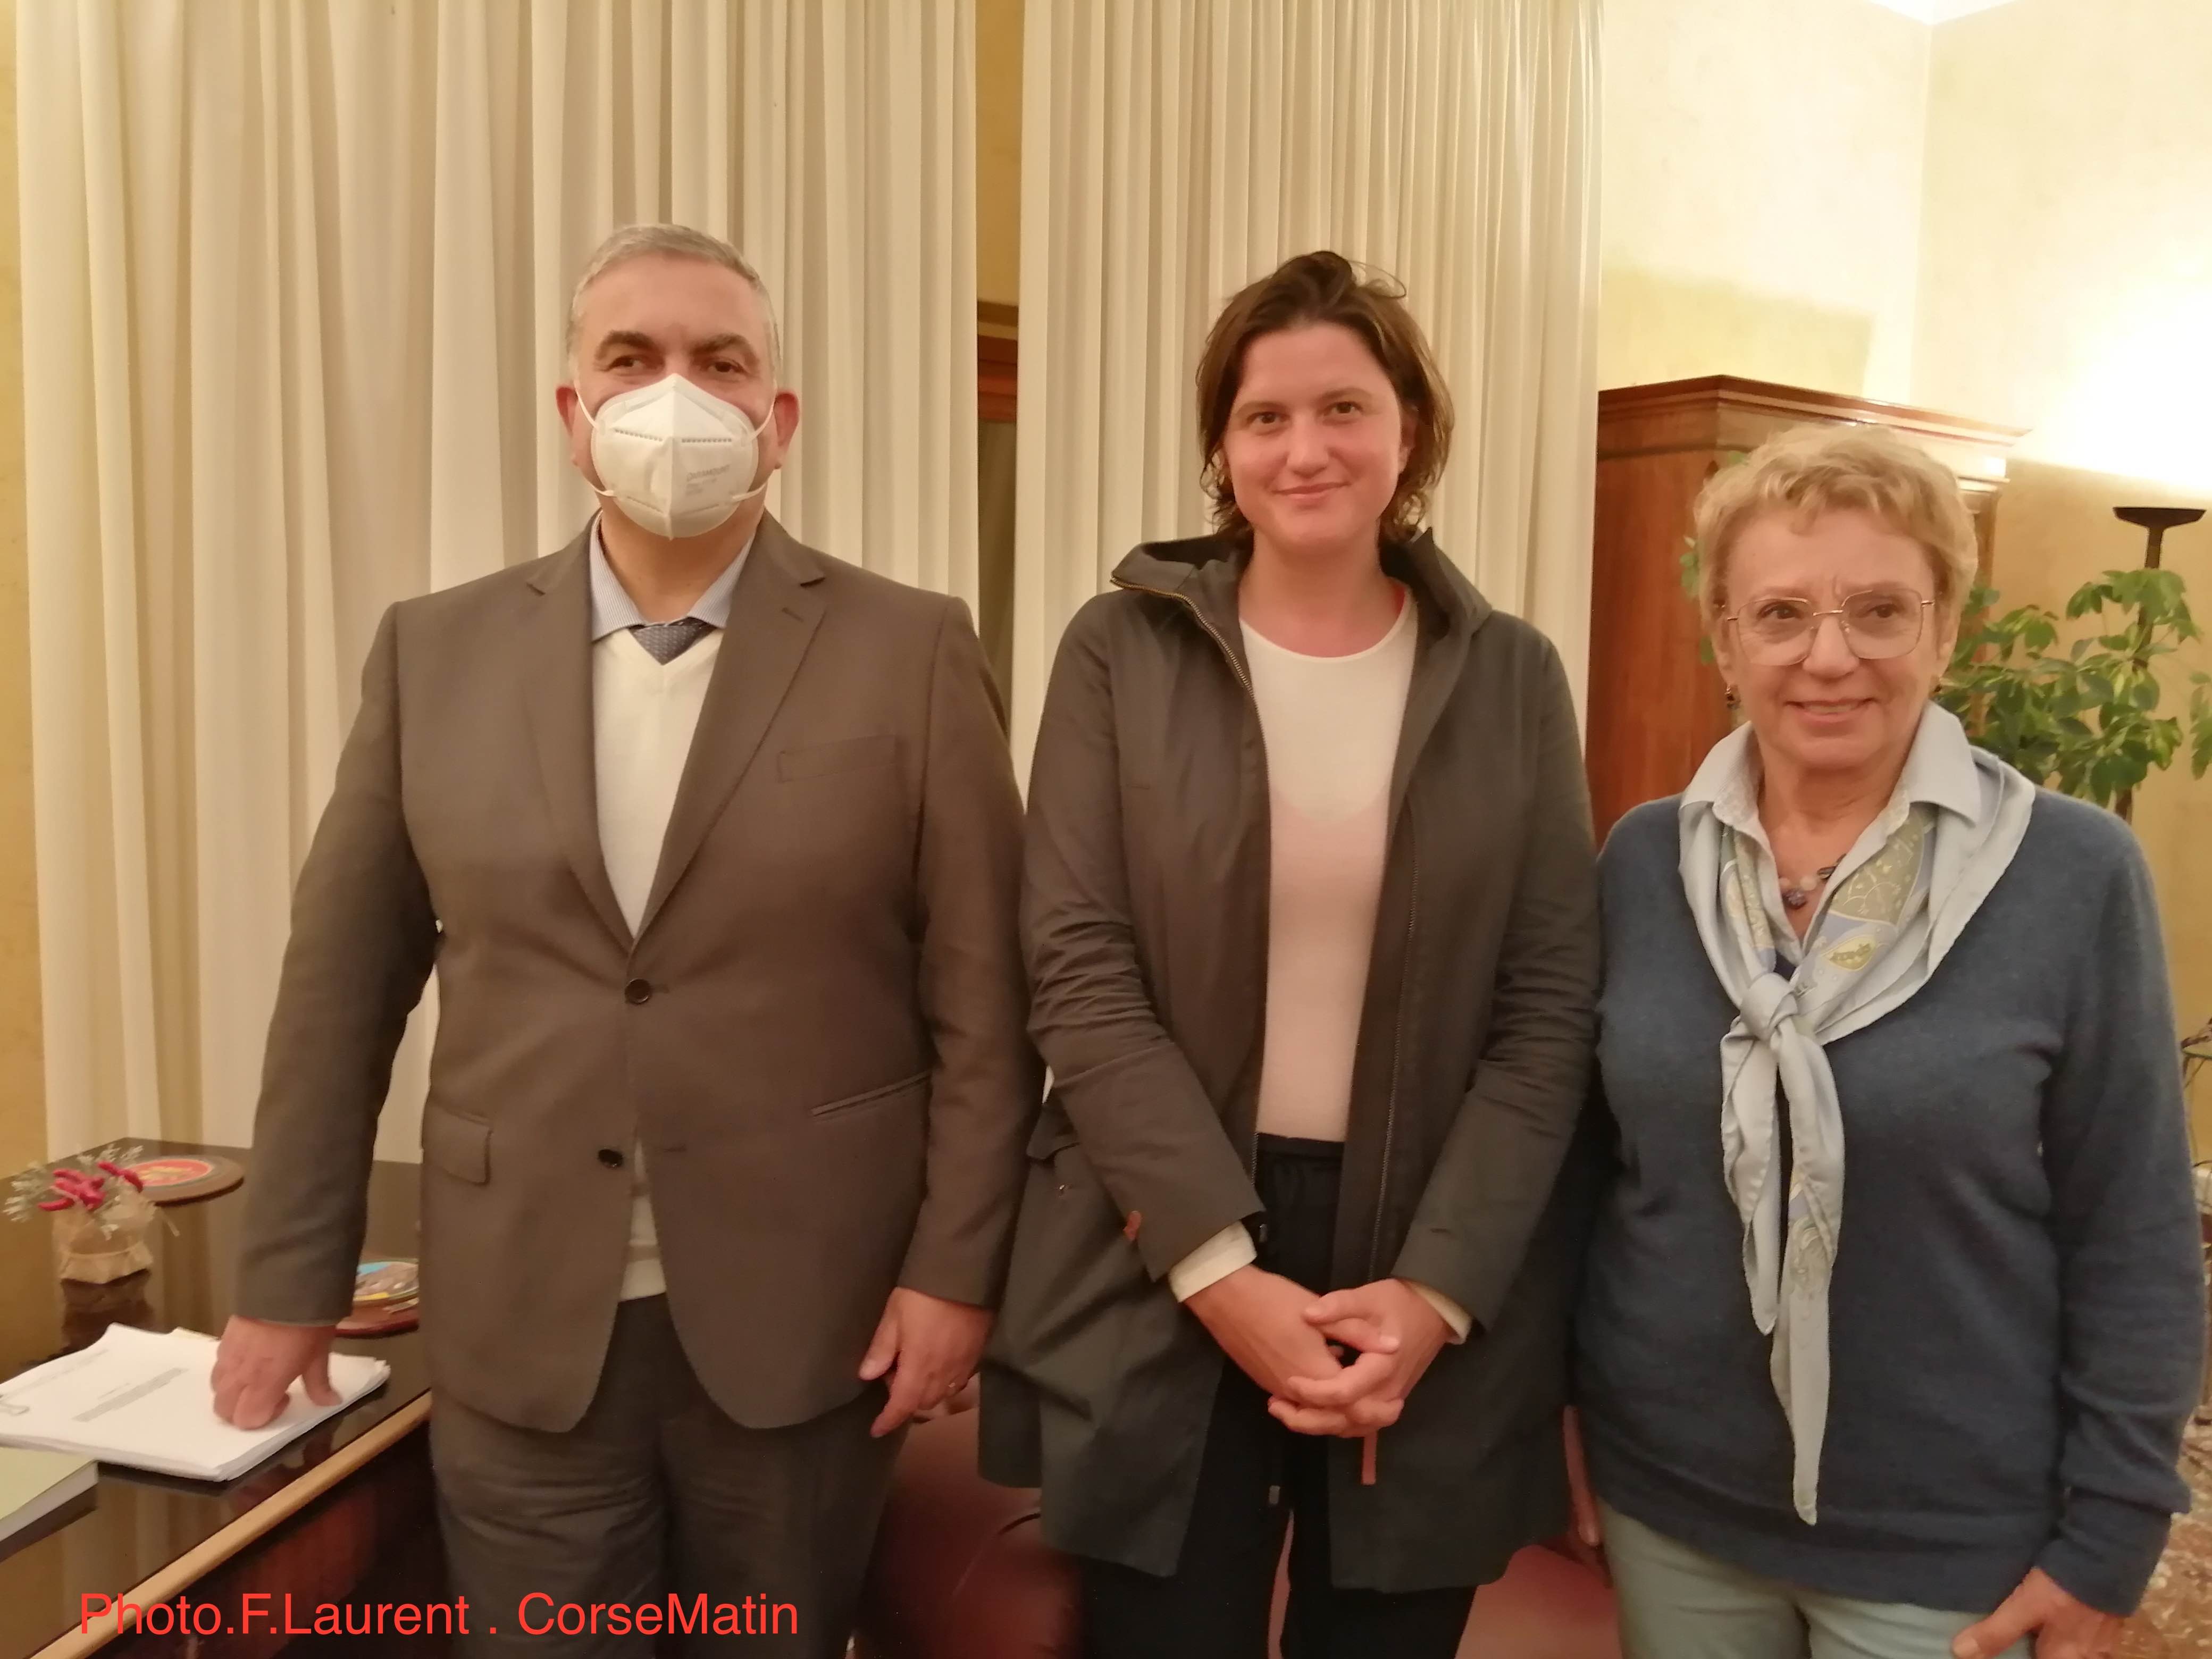 Josette Dall'ava Santucci aux côtés du Président du Tribunal de Palerme et de la Présidente d'Anticor. Photo F. Laurent CorseMatin